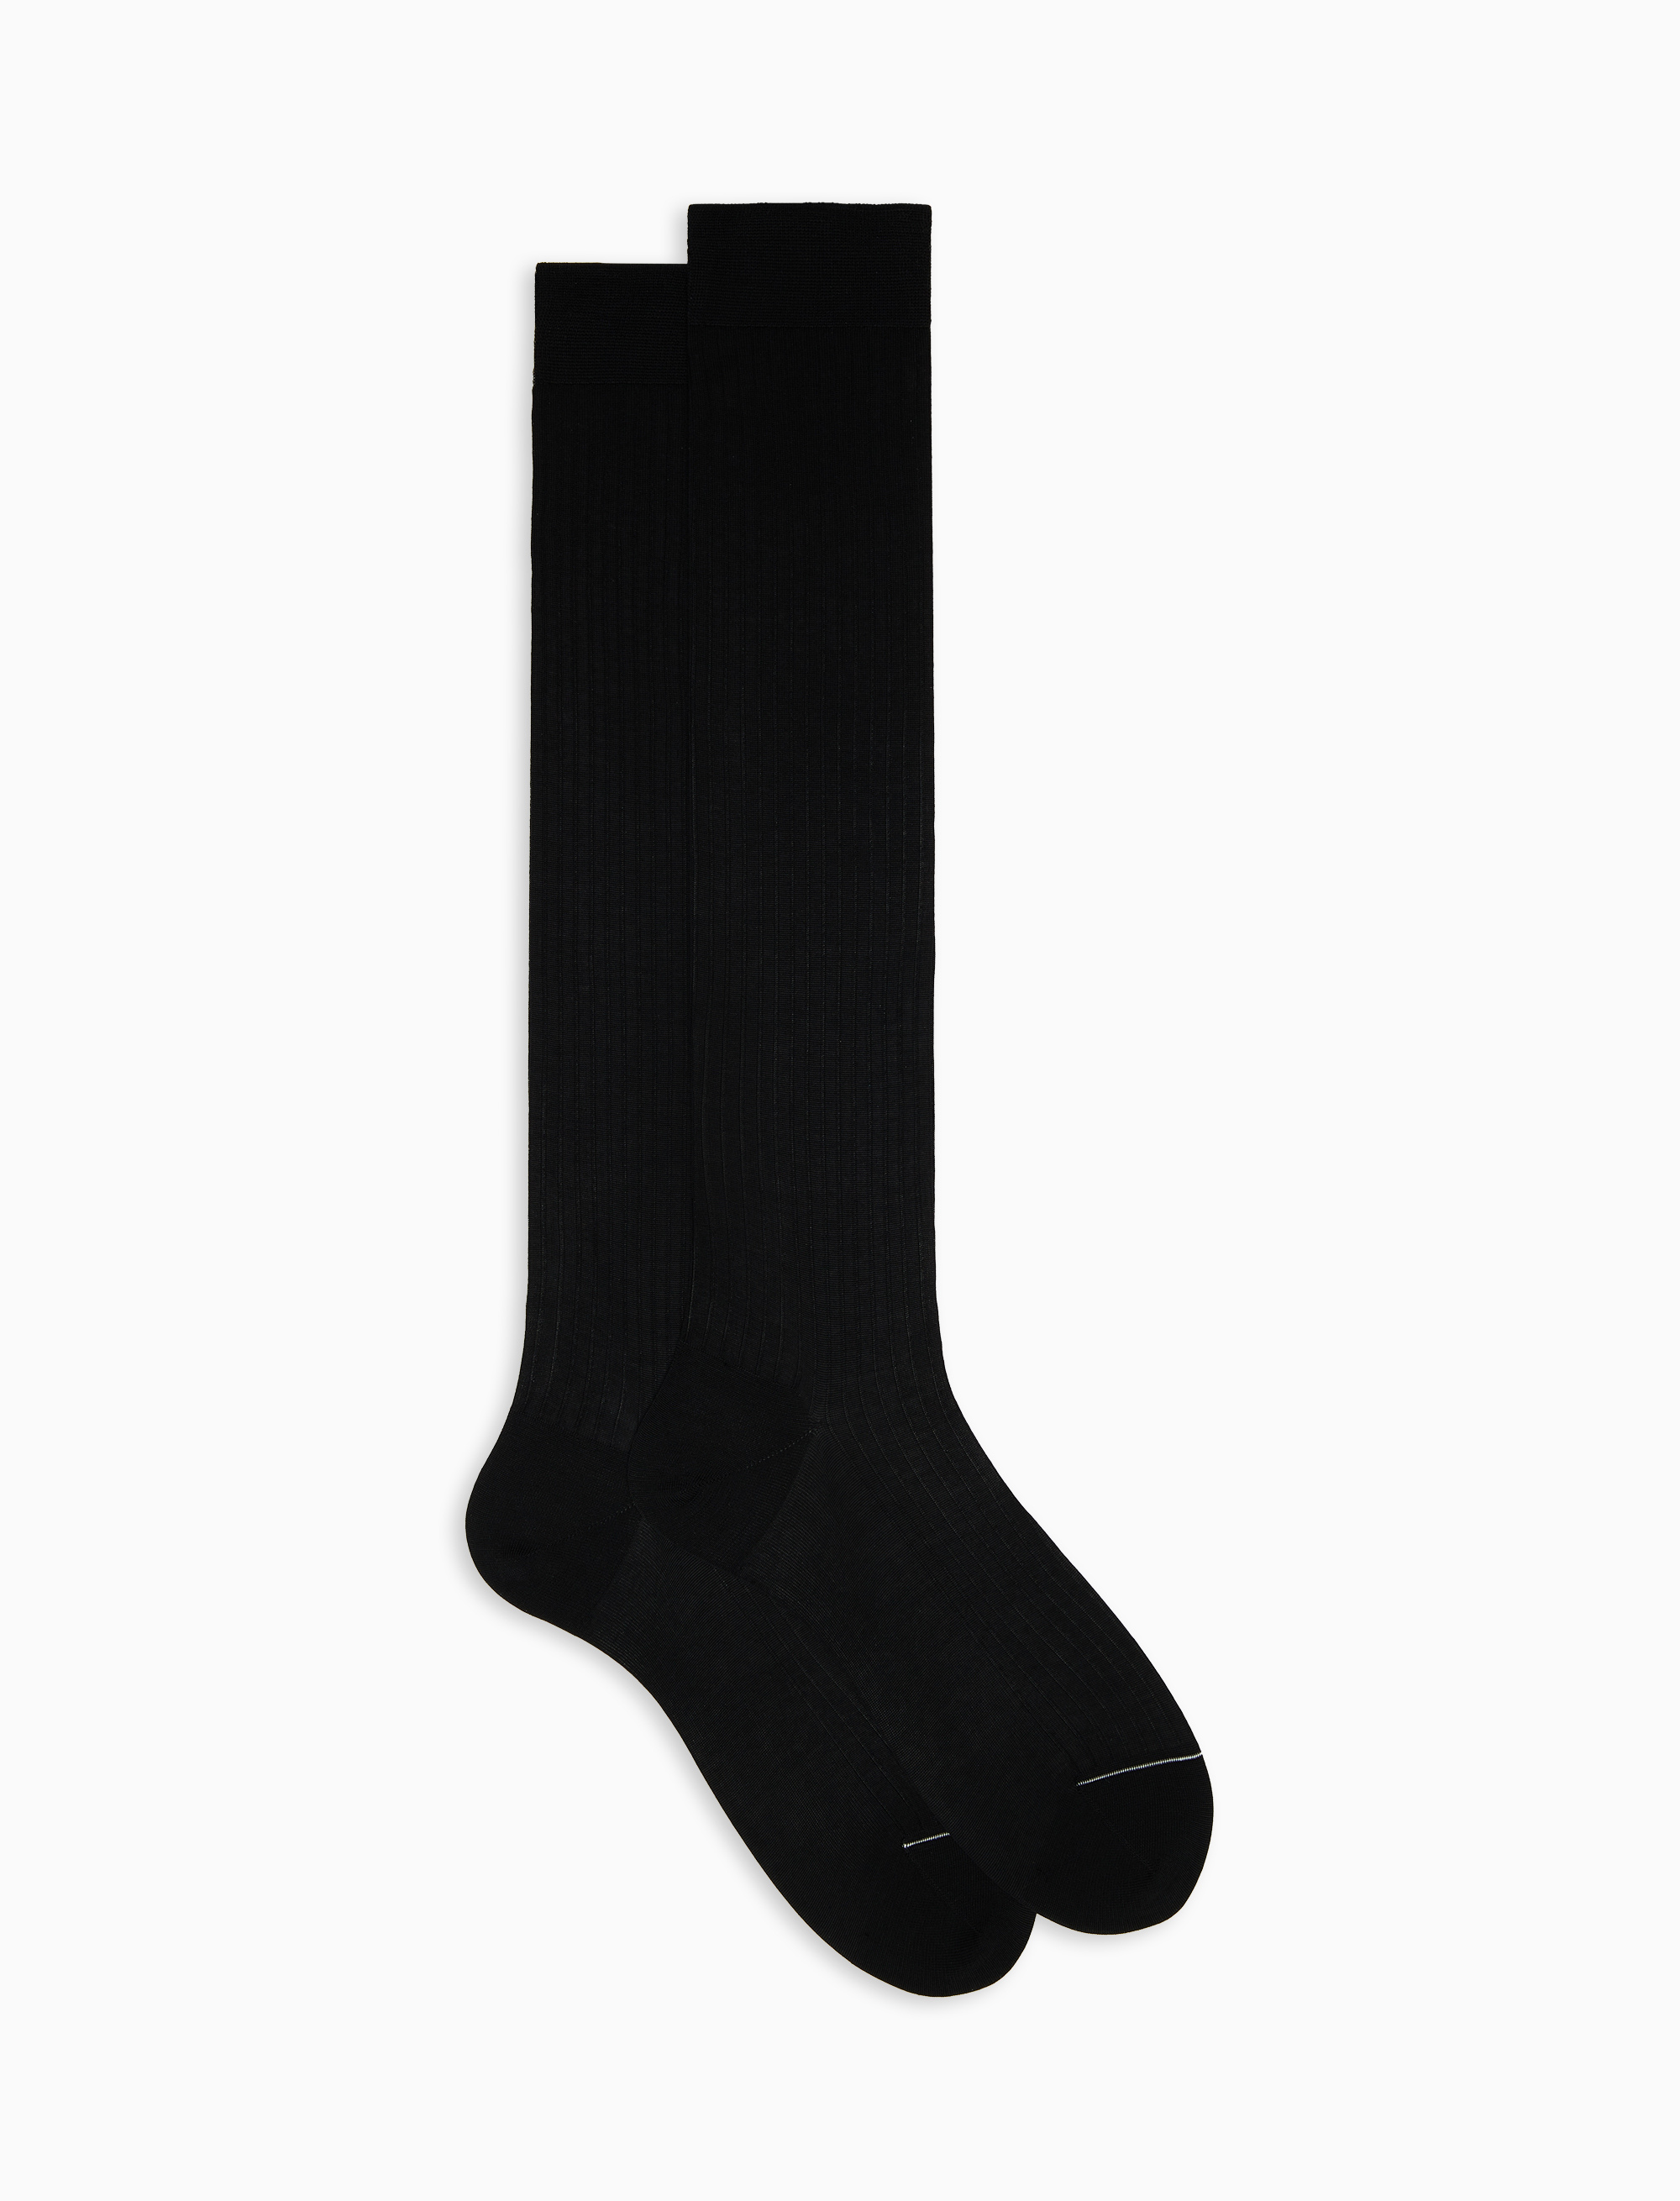 Men's long ribbed plain black cotton socks | Gallo